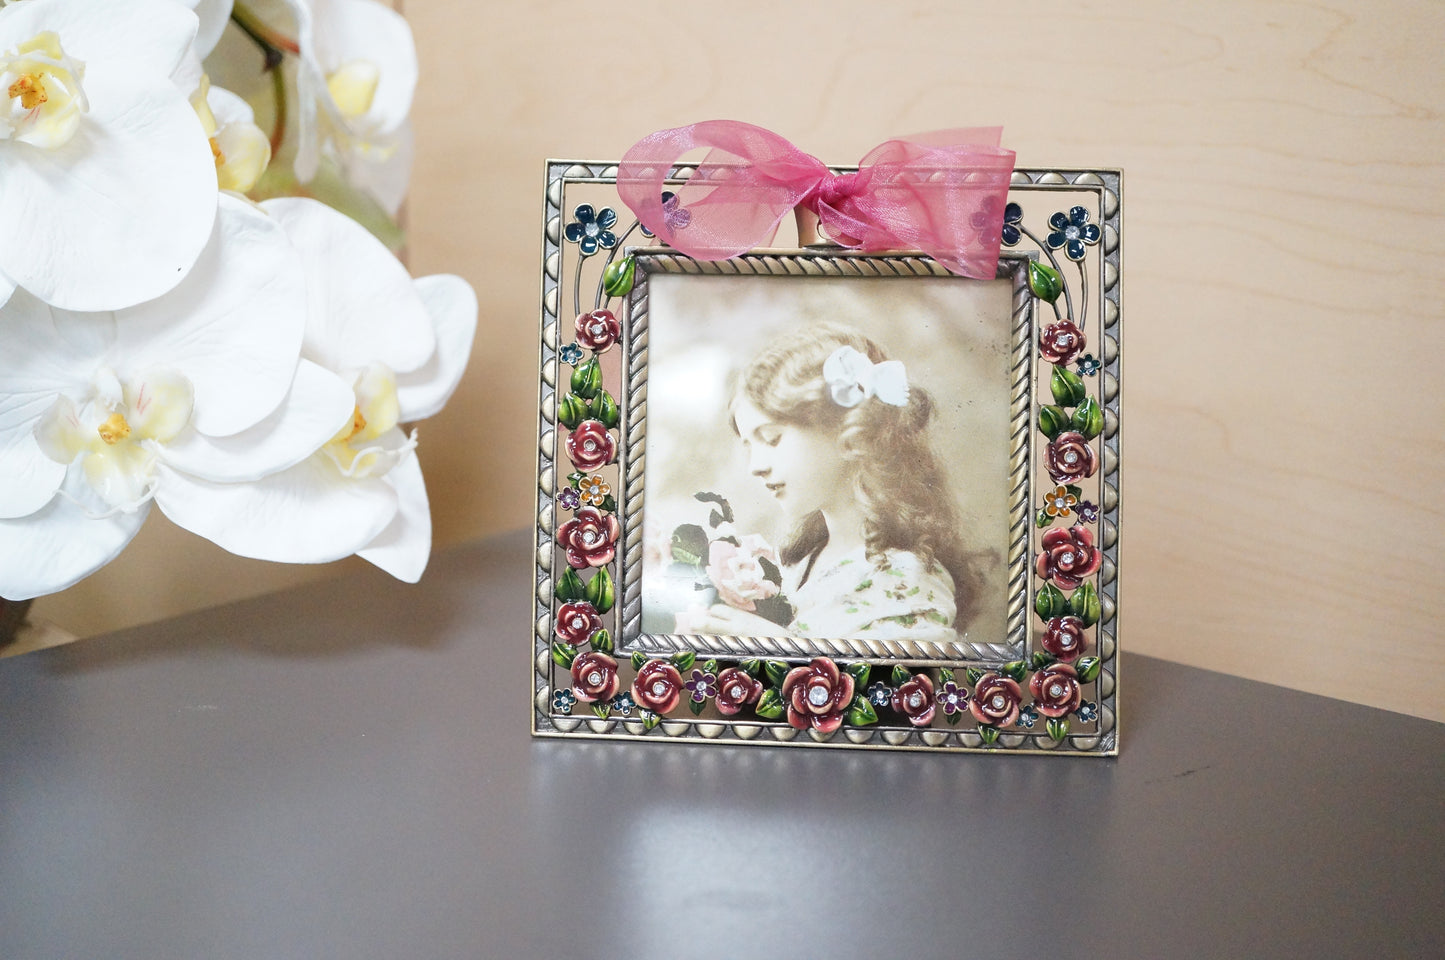 Vintage Floral Ornate Square Free Standing Desk Photo Frame 3.25"x3.25"